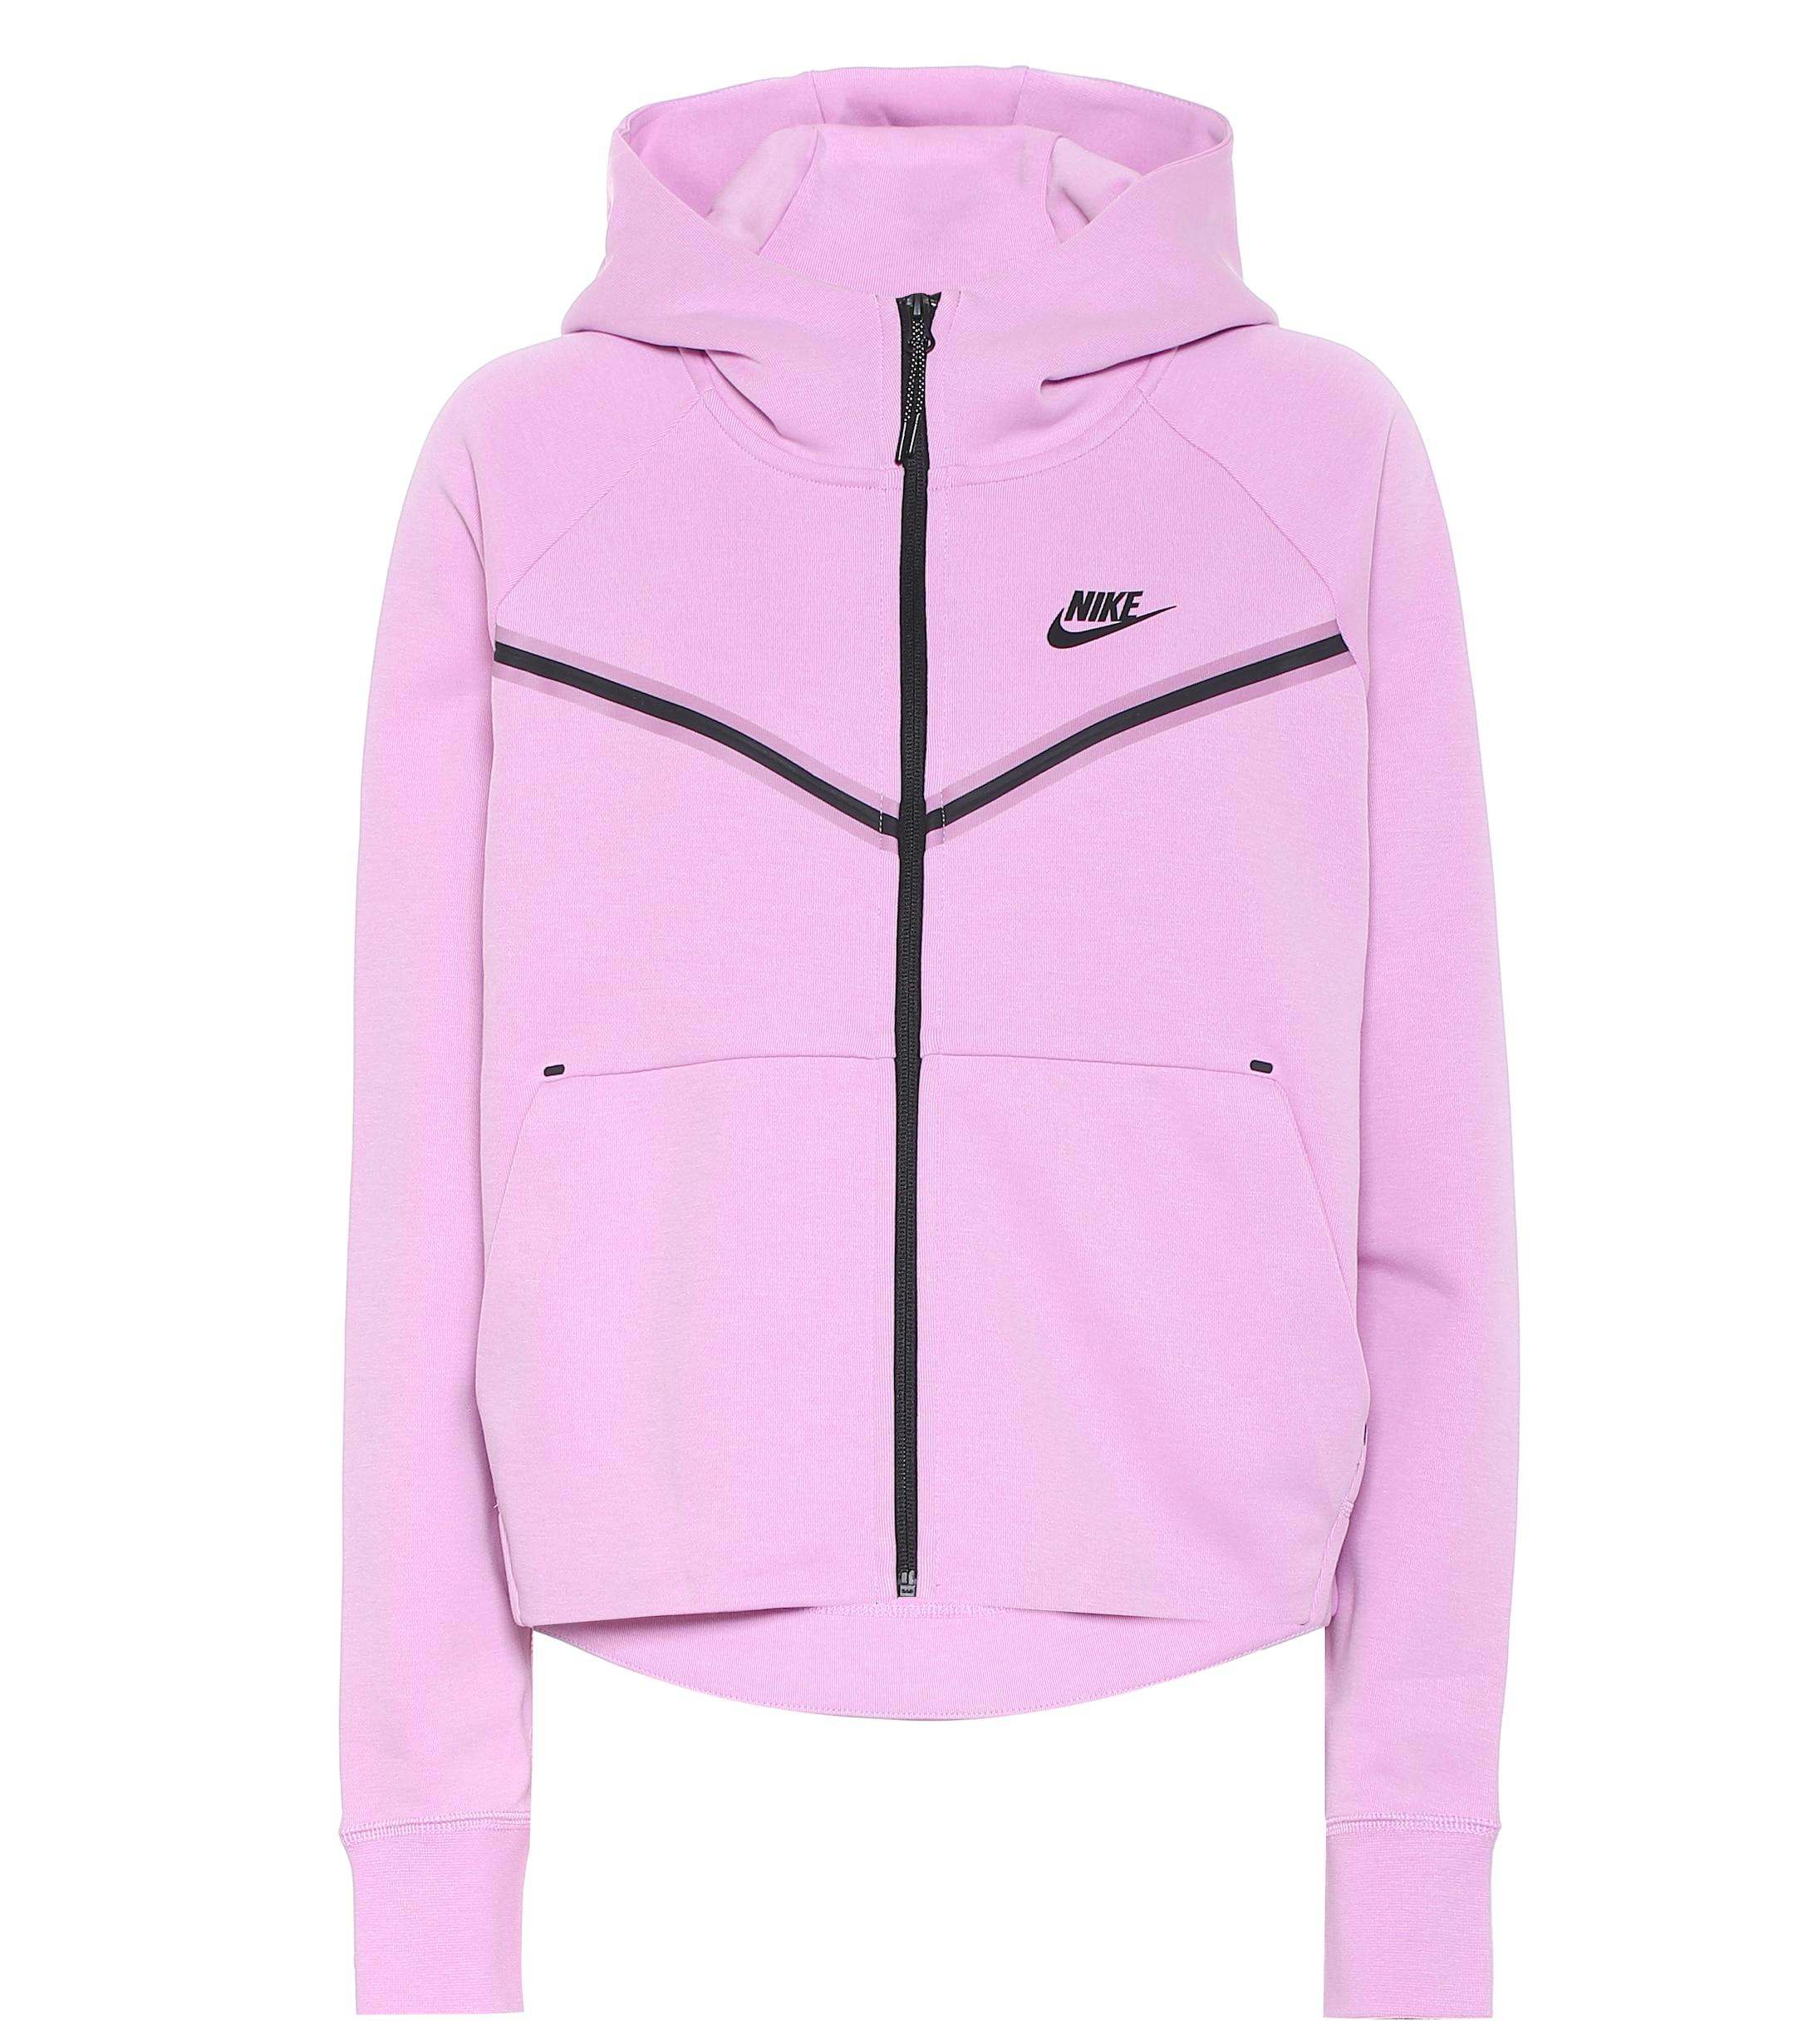 Nike Sportswear Tech Fleece Full Zip Long Sleeve In Pink Lyst Uk